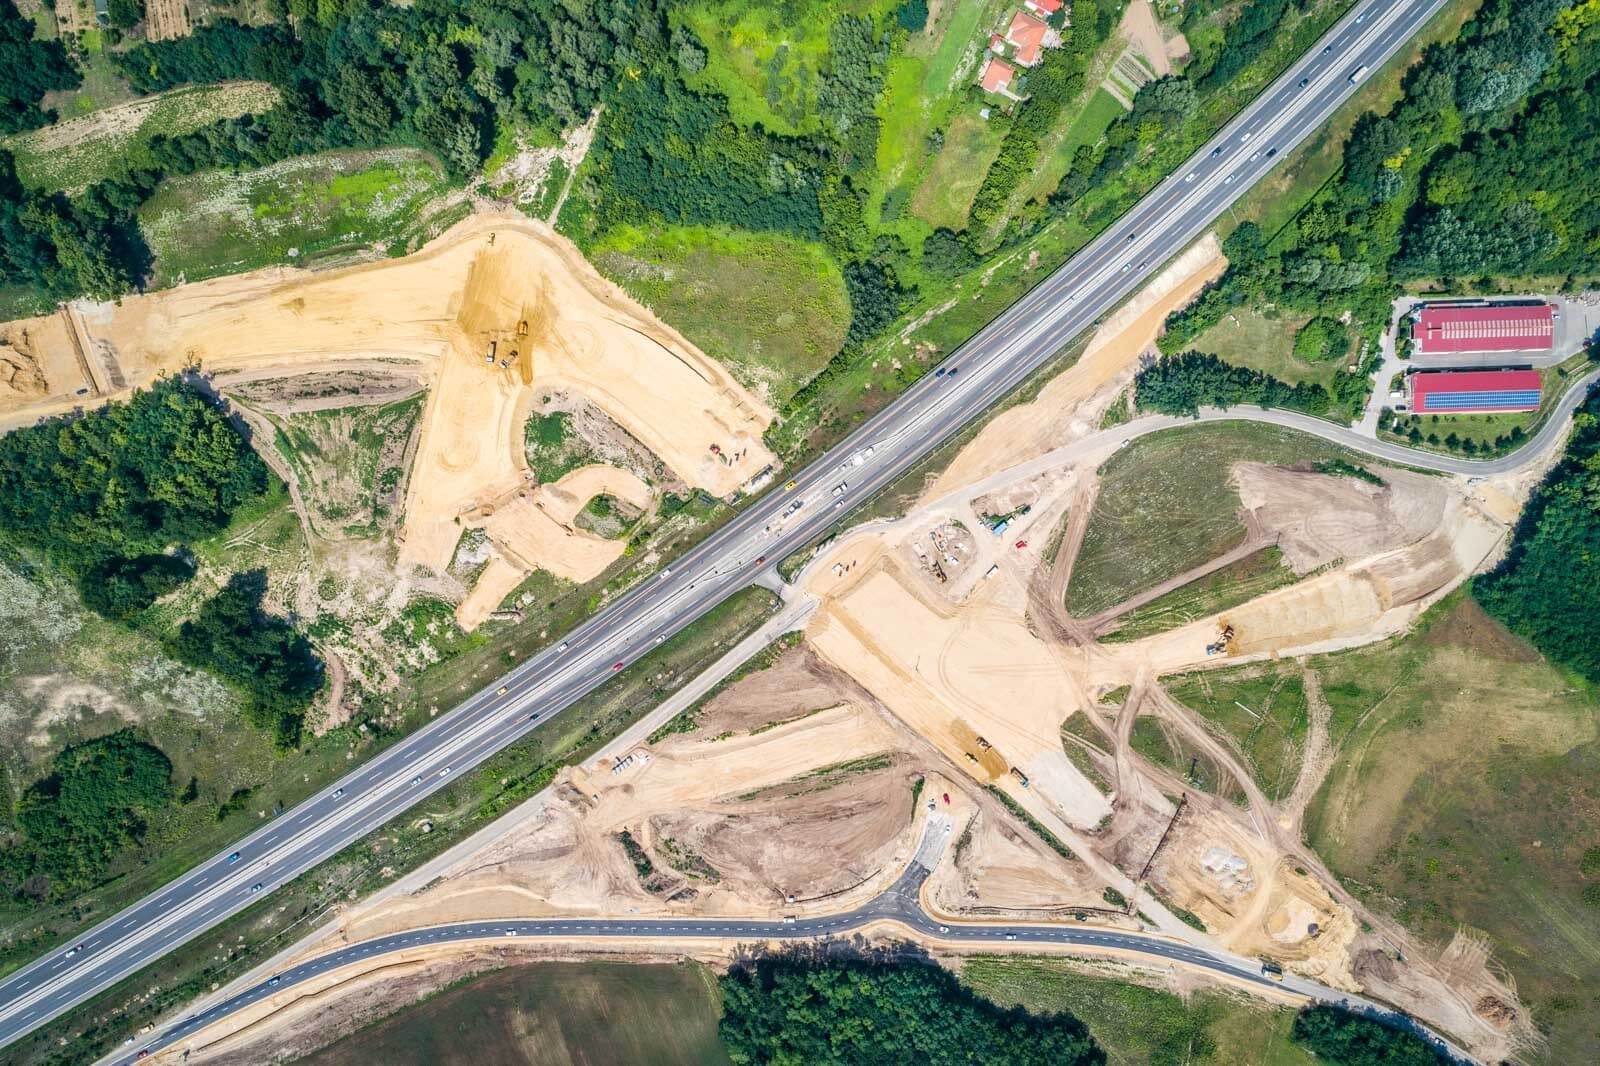 Kiderült, ki tervezi meg Debrecen új autópálya-csomópontját